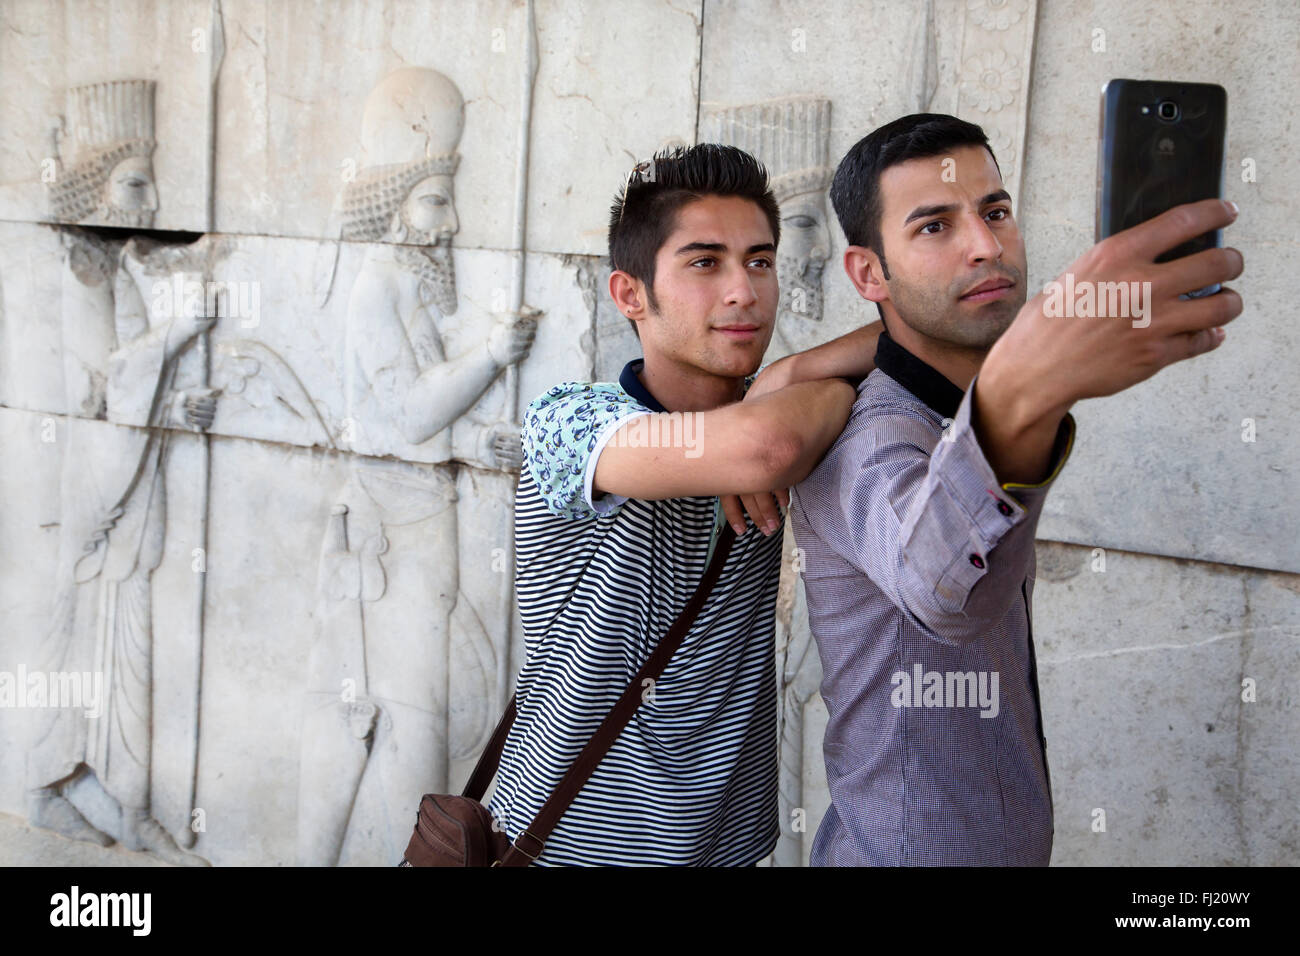 Les hommes prenant de l'Iran, l'Iran Persepolis en selfies Banque D'Images